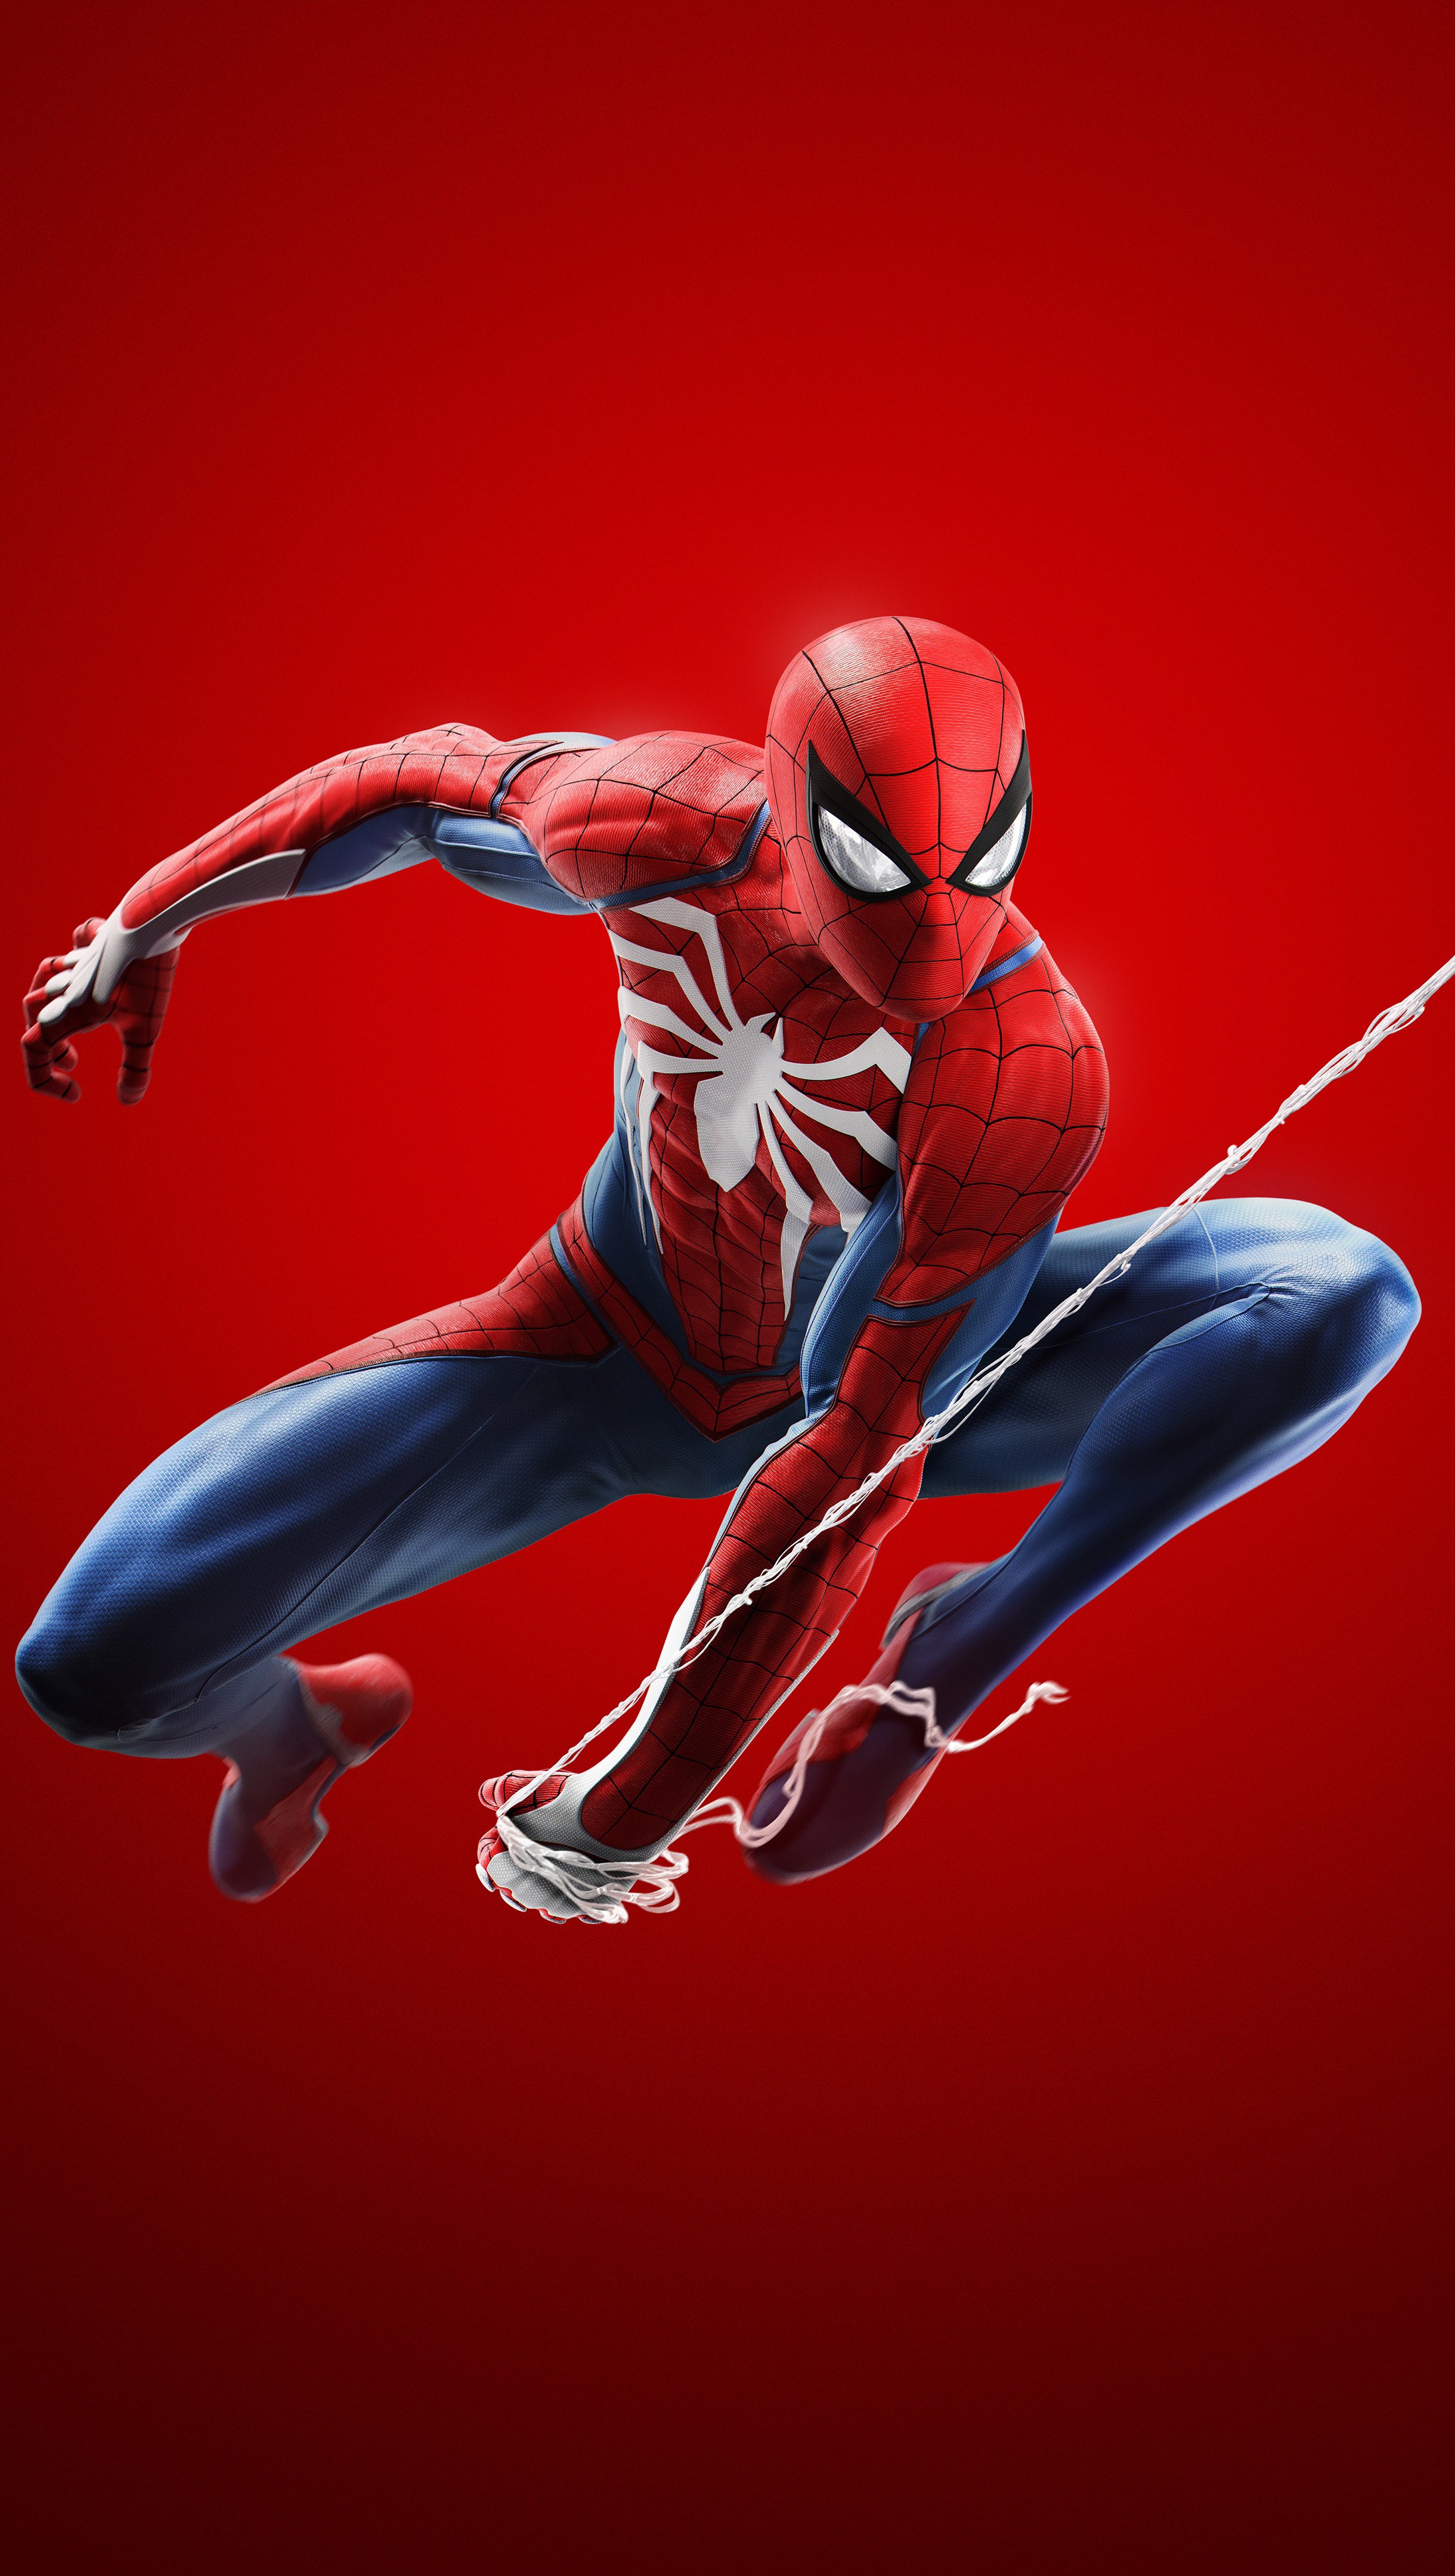 Wallpaper Spider Man Visual, Spider-man, Marvels Spider-man Miles Morales,  Marvels Avengers, Playstation 4, Background - Download Free Image